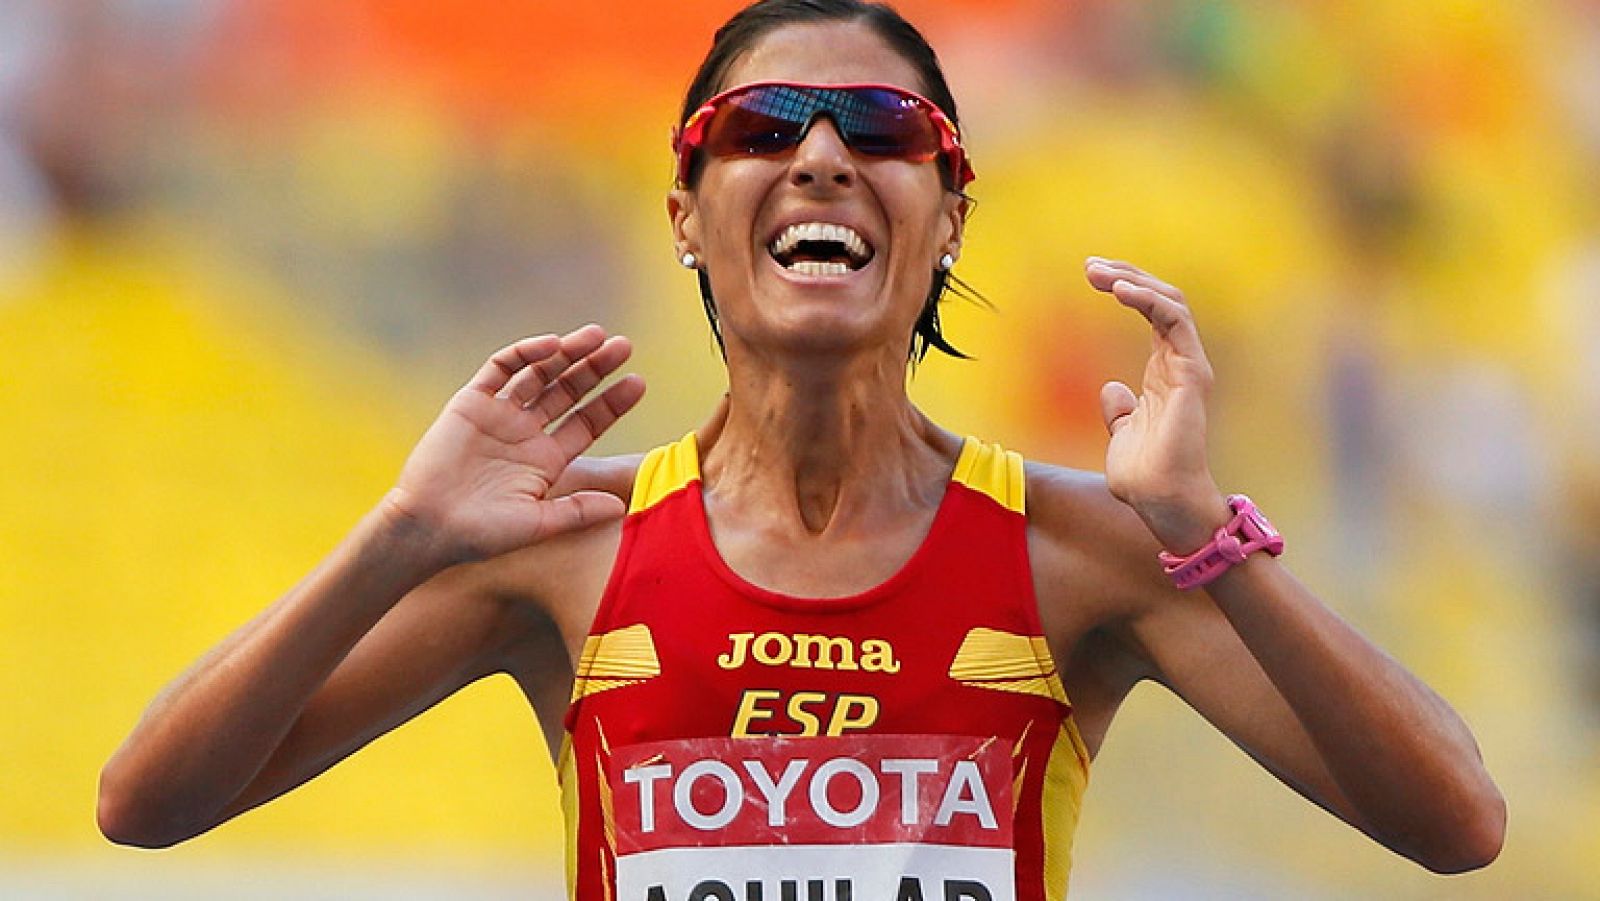 Alessandra Aguilar ha logrado acabar quinta en la maratón de los Mundiales de Moscú 2013, el puesto más alto logrado nunca por una atleta española.